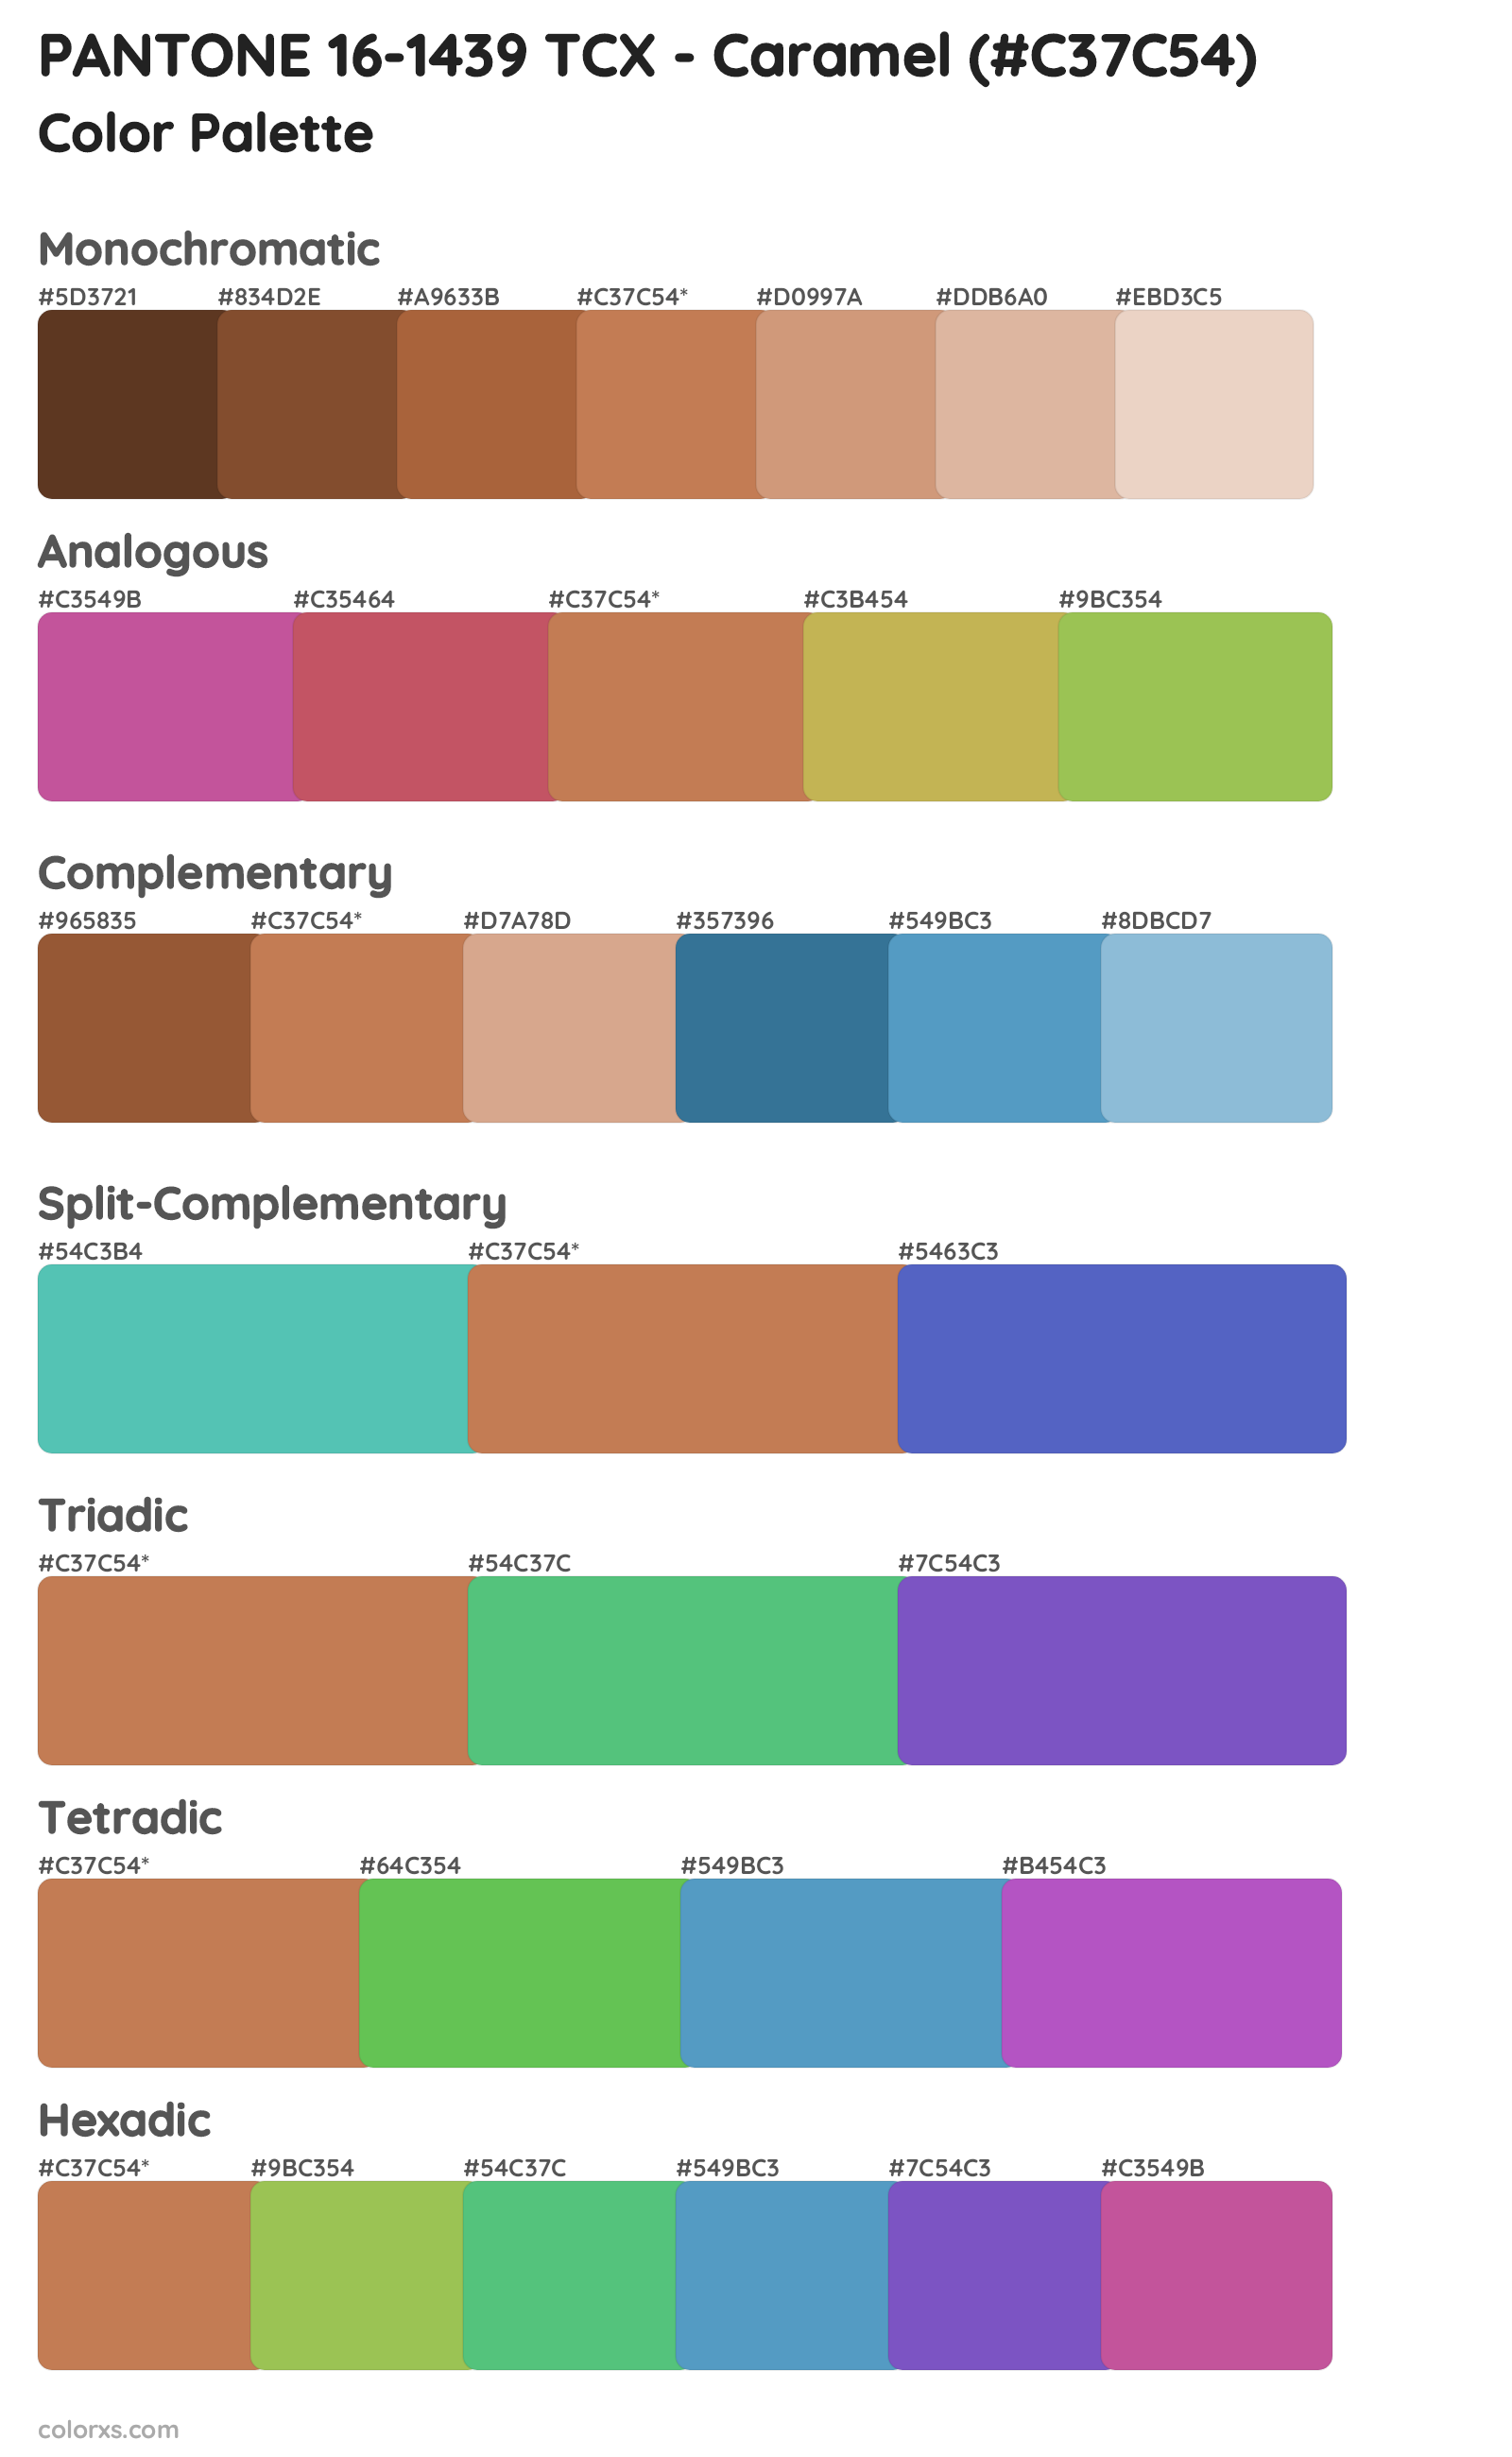 PANTONE 16-1439 TCX - Caramel Color Scheme Palettes